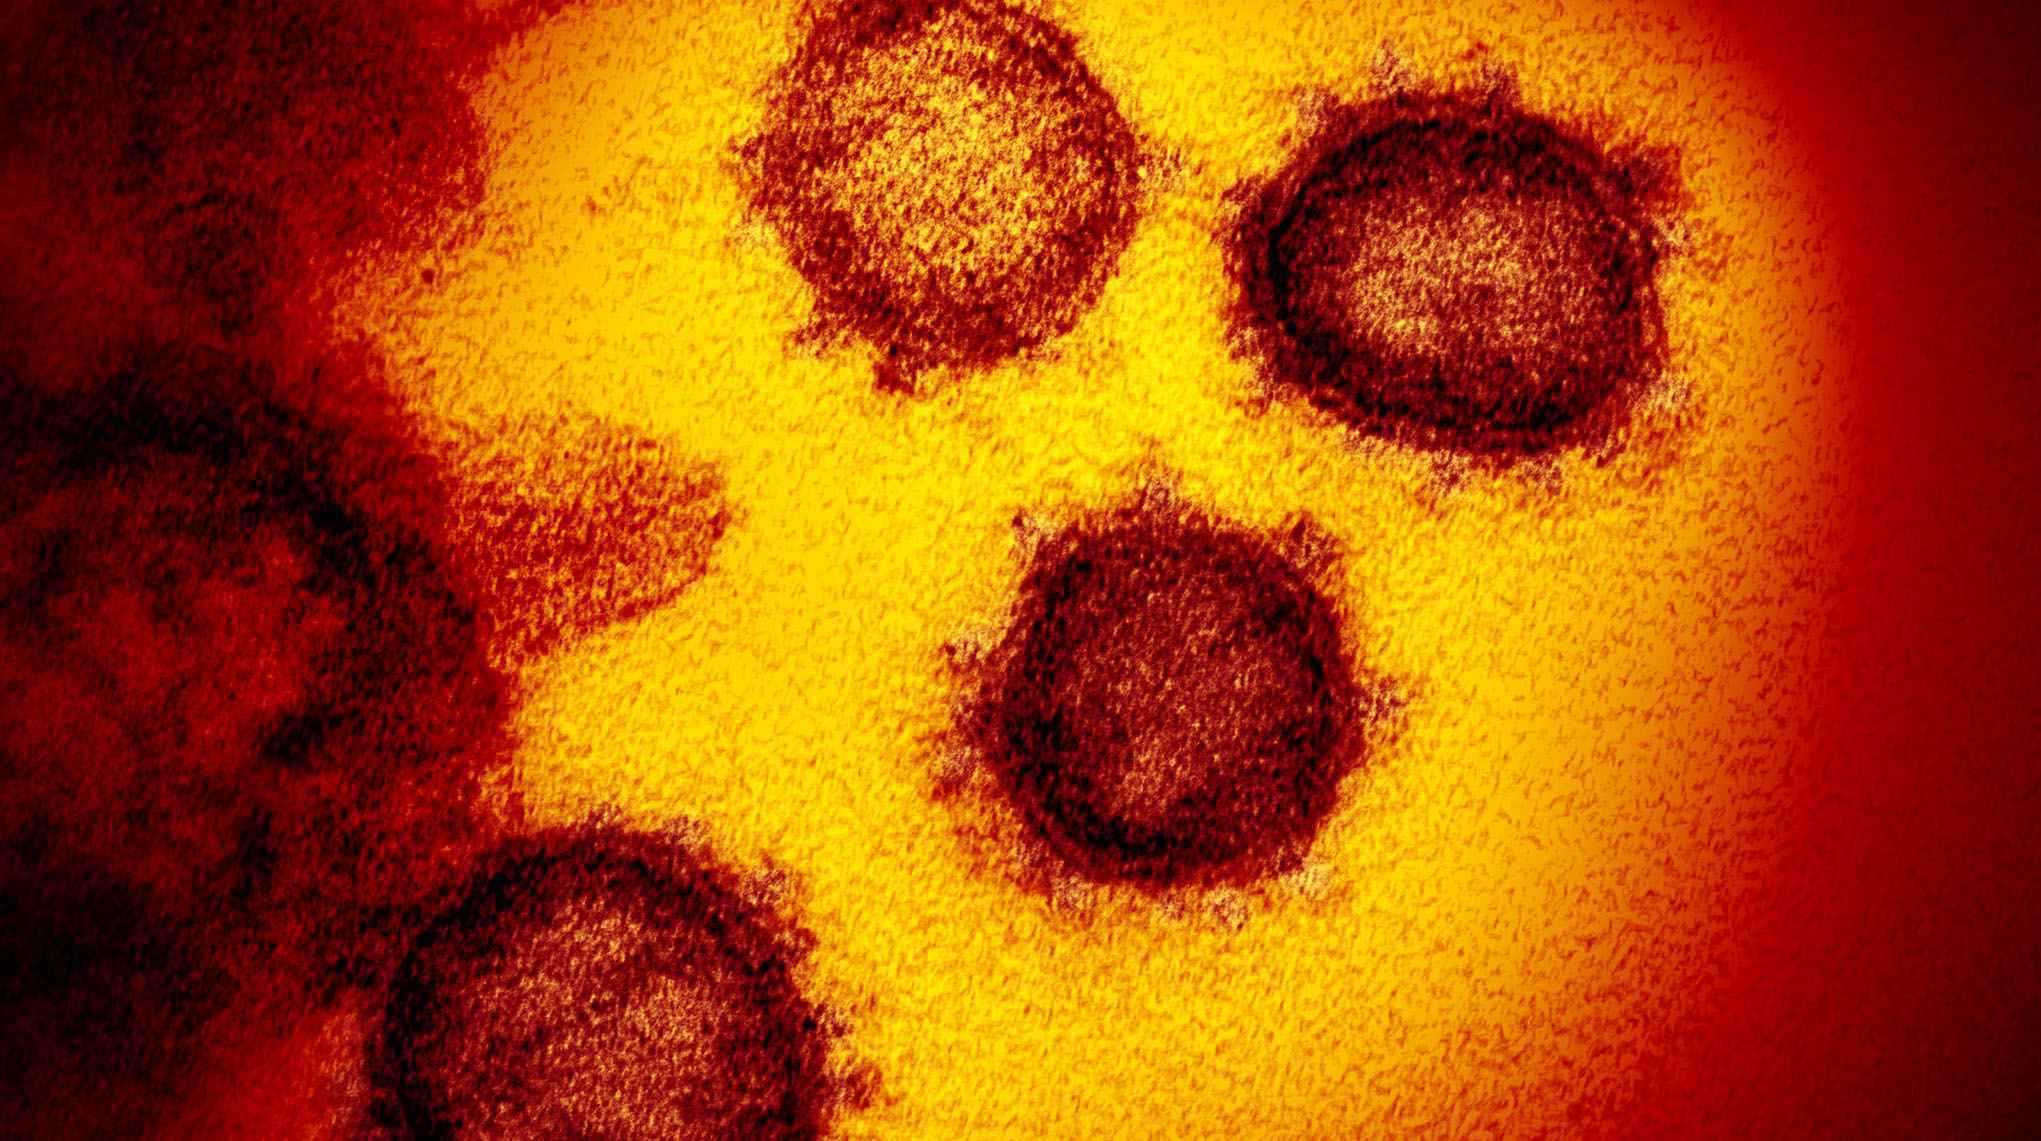 Sars-CoV-2 isolado de um paciente nos EUA; na imagem gerada por microscópio eletrônico de transmissão, as partículas do vírus emergem da superfície das células cultivadas em laboratório